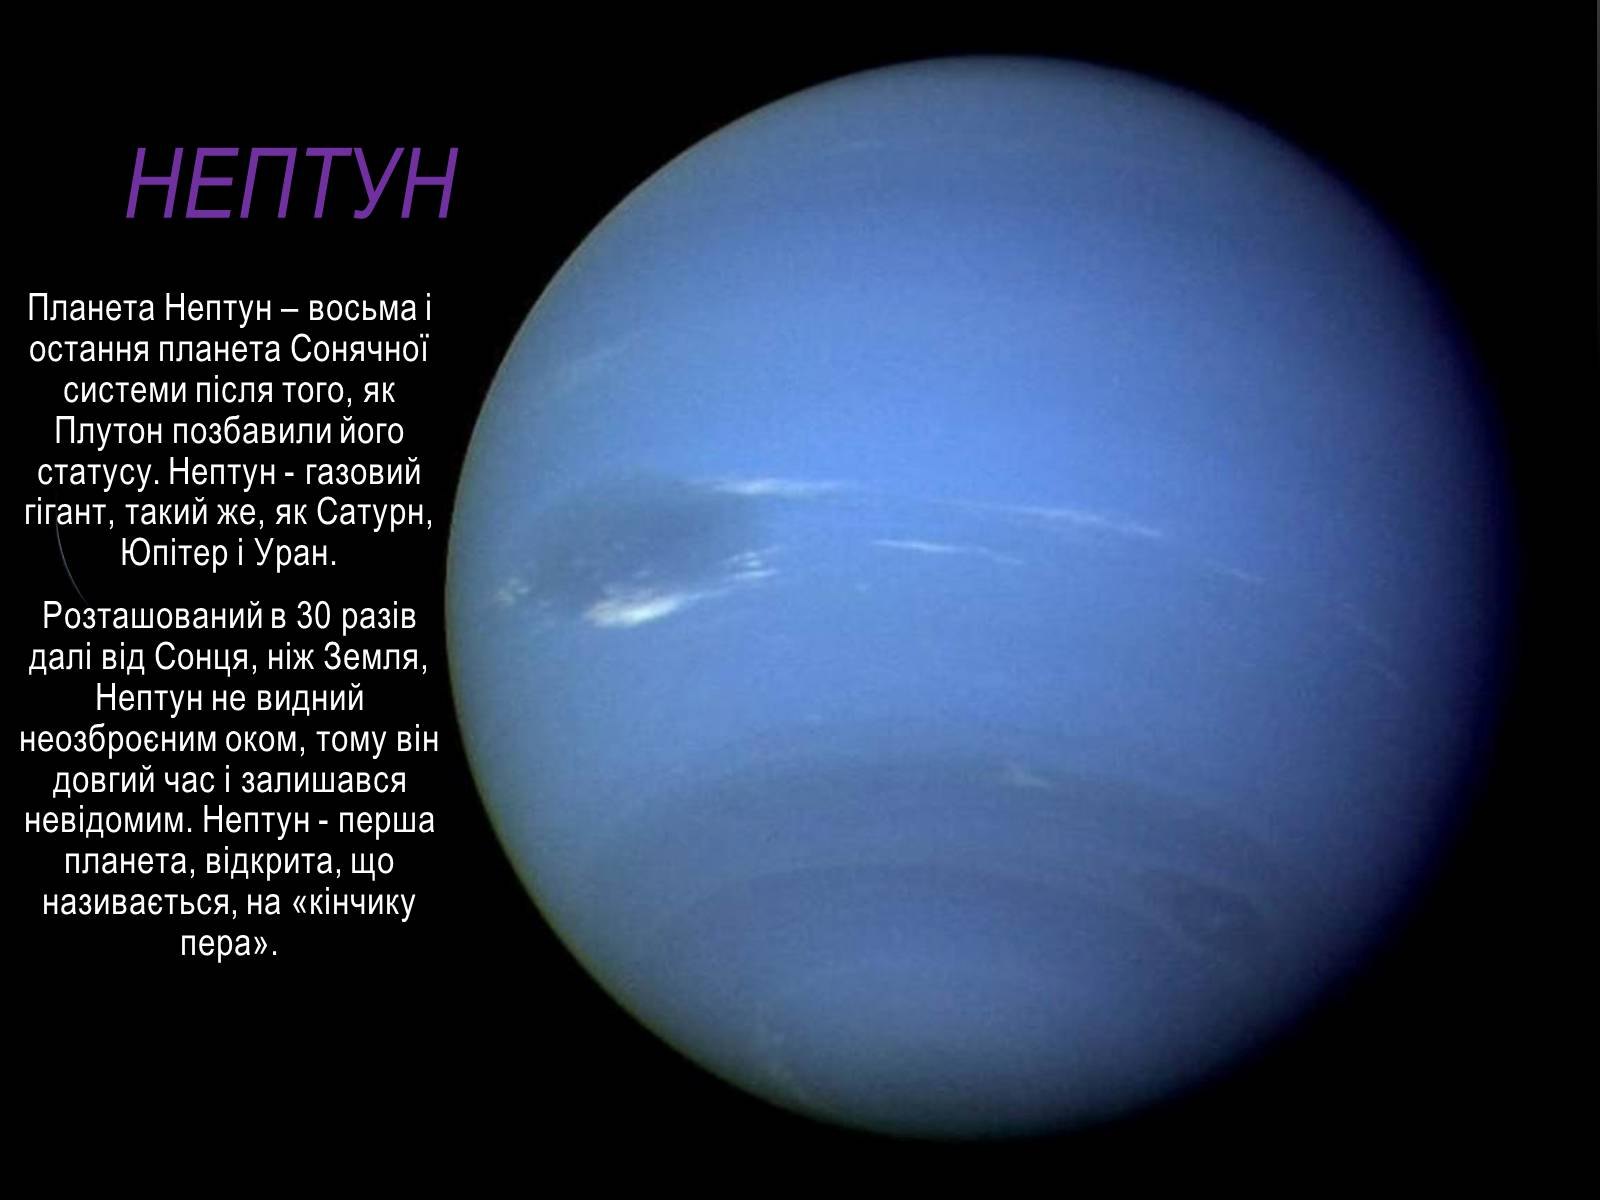 Проект про планету Нептун